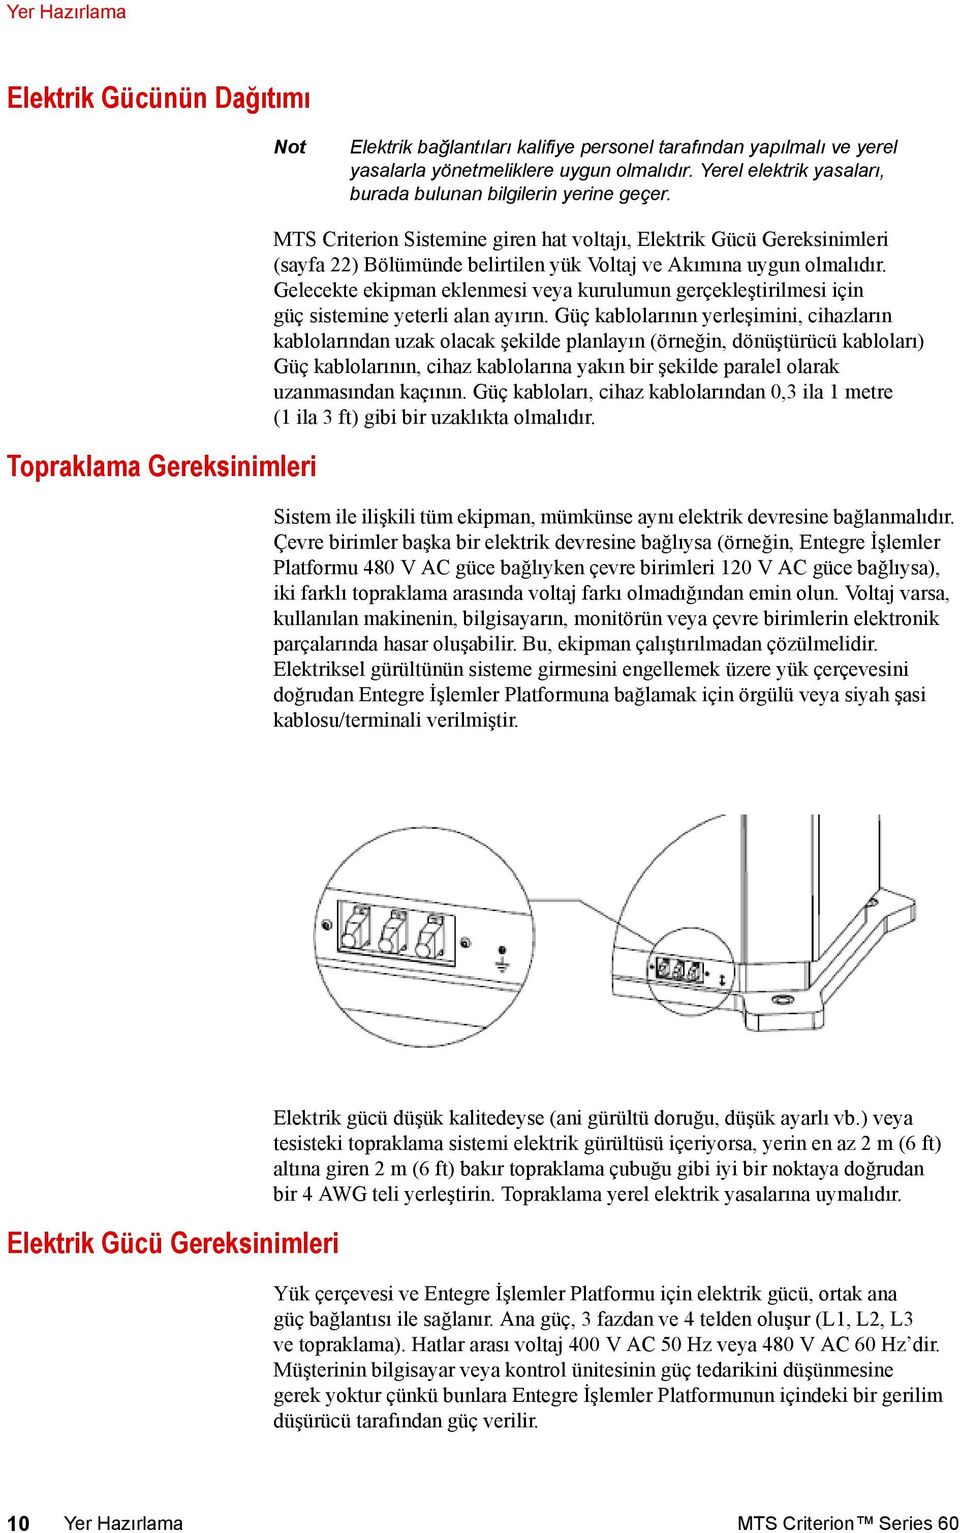 Topraklama Gereksinimleri MTS Criterion Sistemine giren hat voltajı, Elektrik Gücü Gereksinimleri (sayfa 22) Bölümünde belirtilen yük Voltaj ve Akımına uygun olmalıdır.